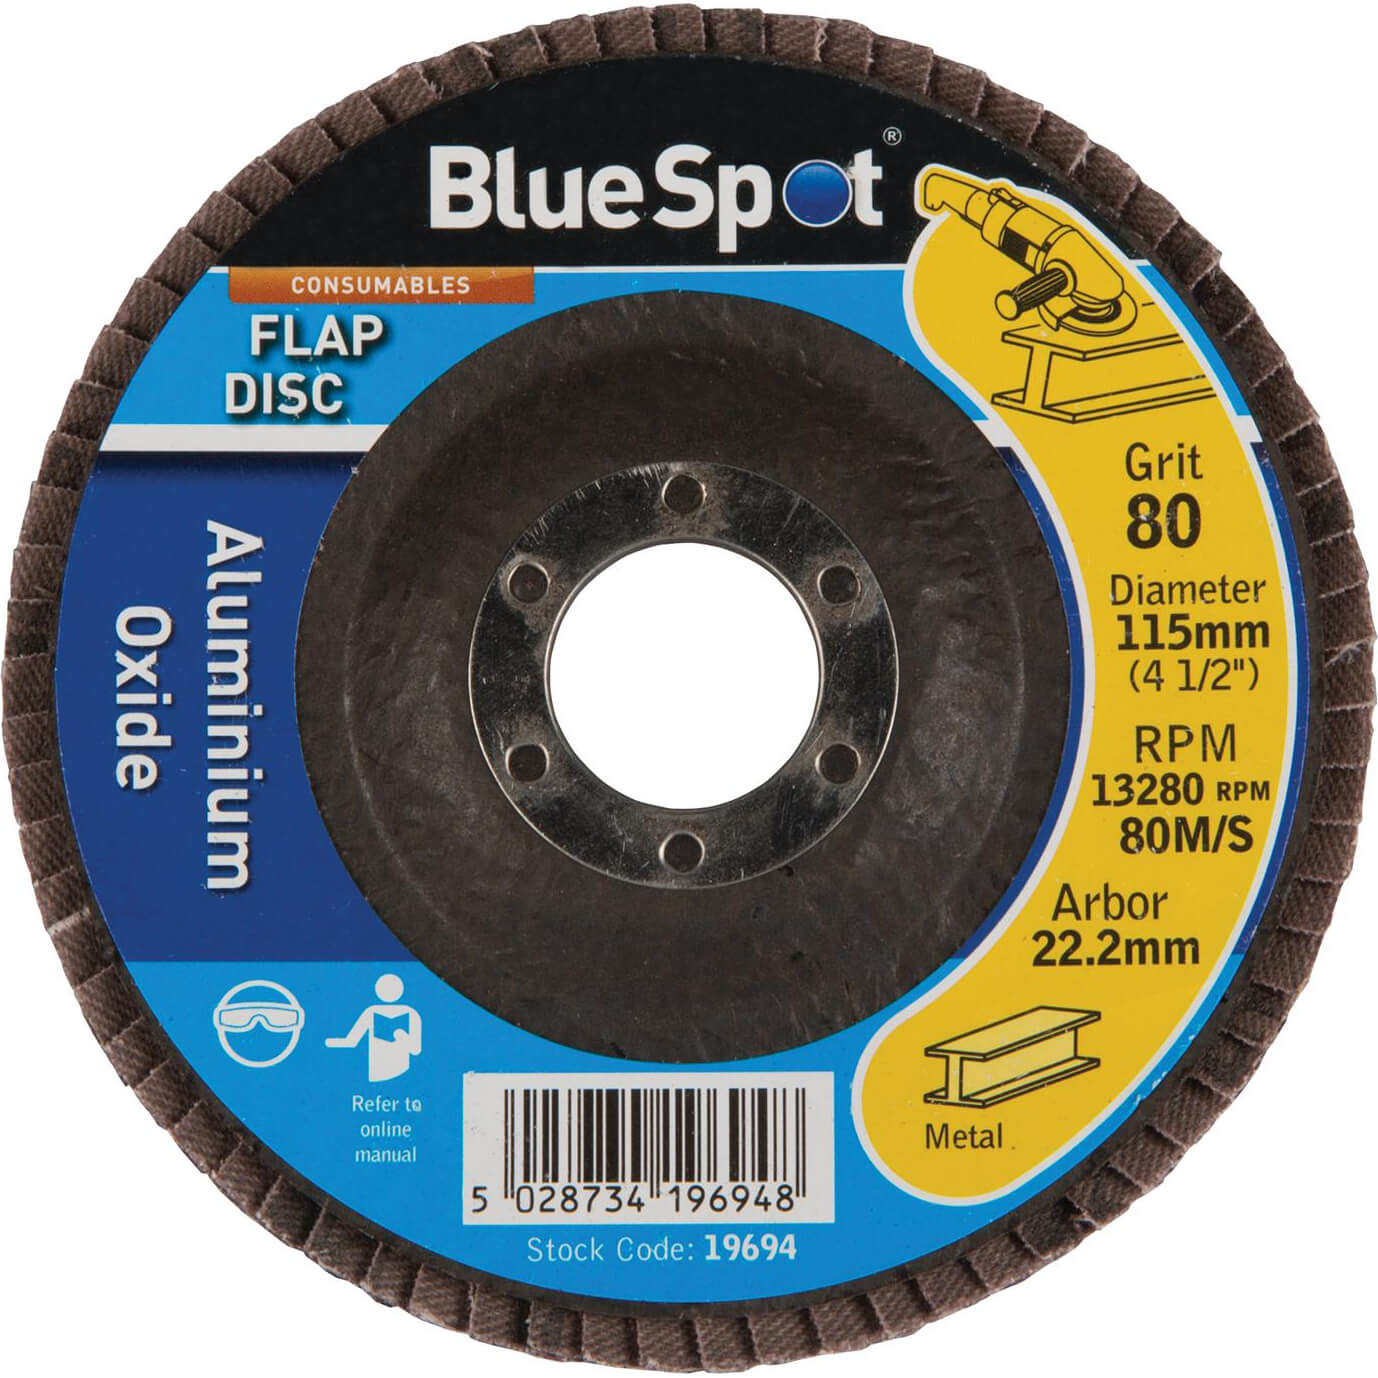 Photo of Bluespot Flap Disc 115mm 115mm 80g